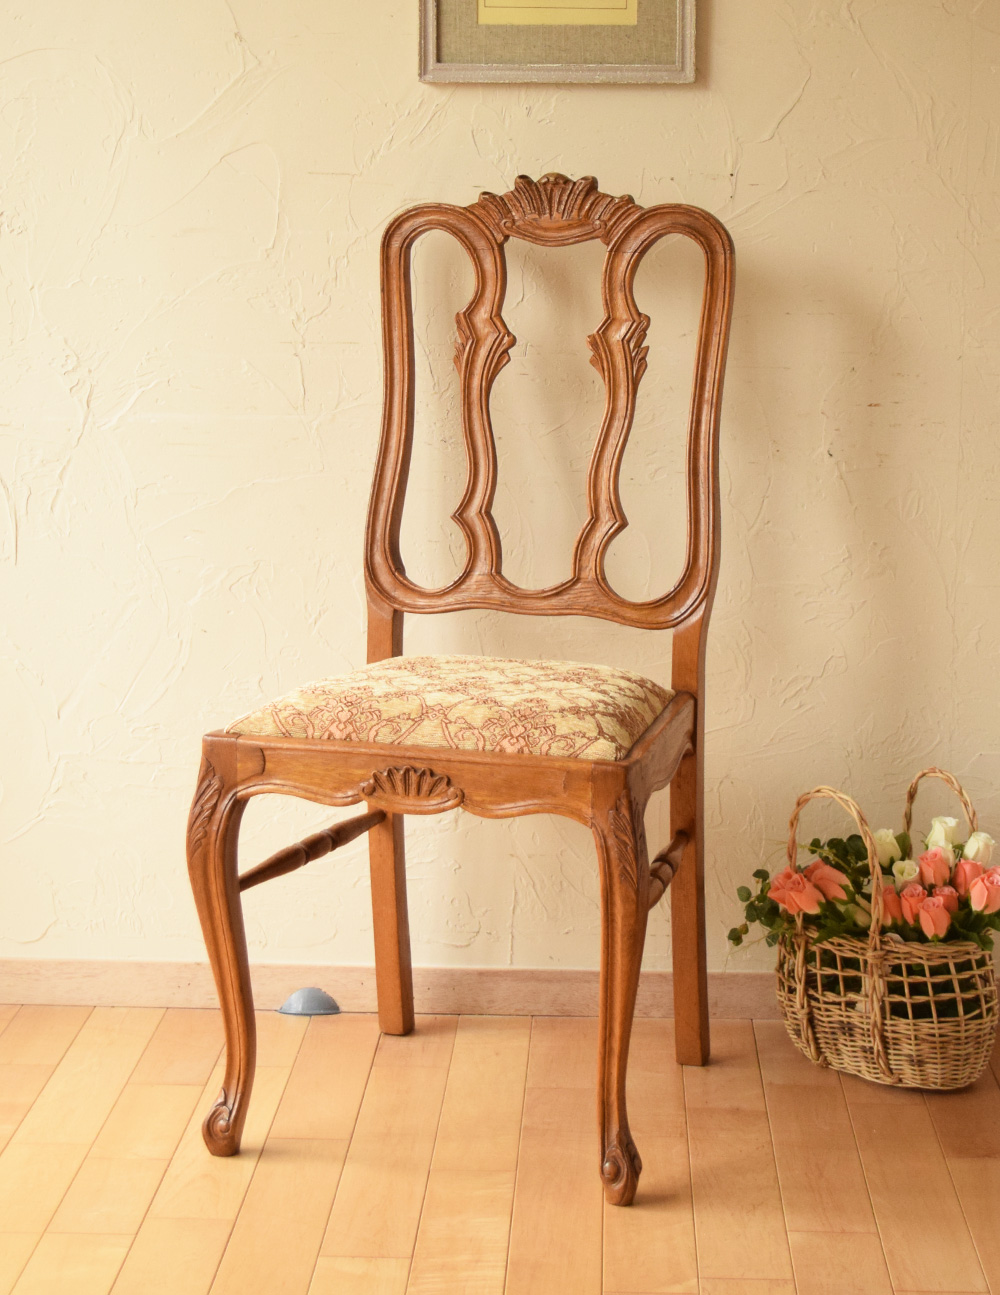 装飾が美しいフランスの椅子、アンティークダイニングチェア (j-563-c)